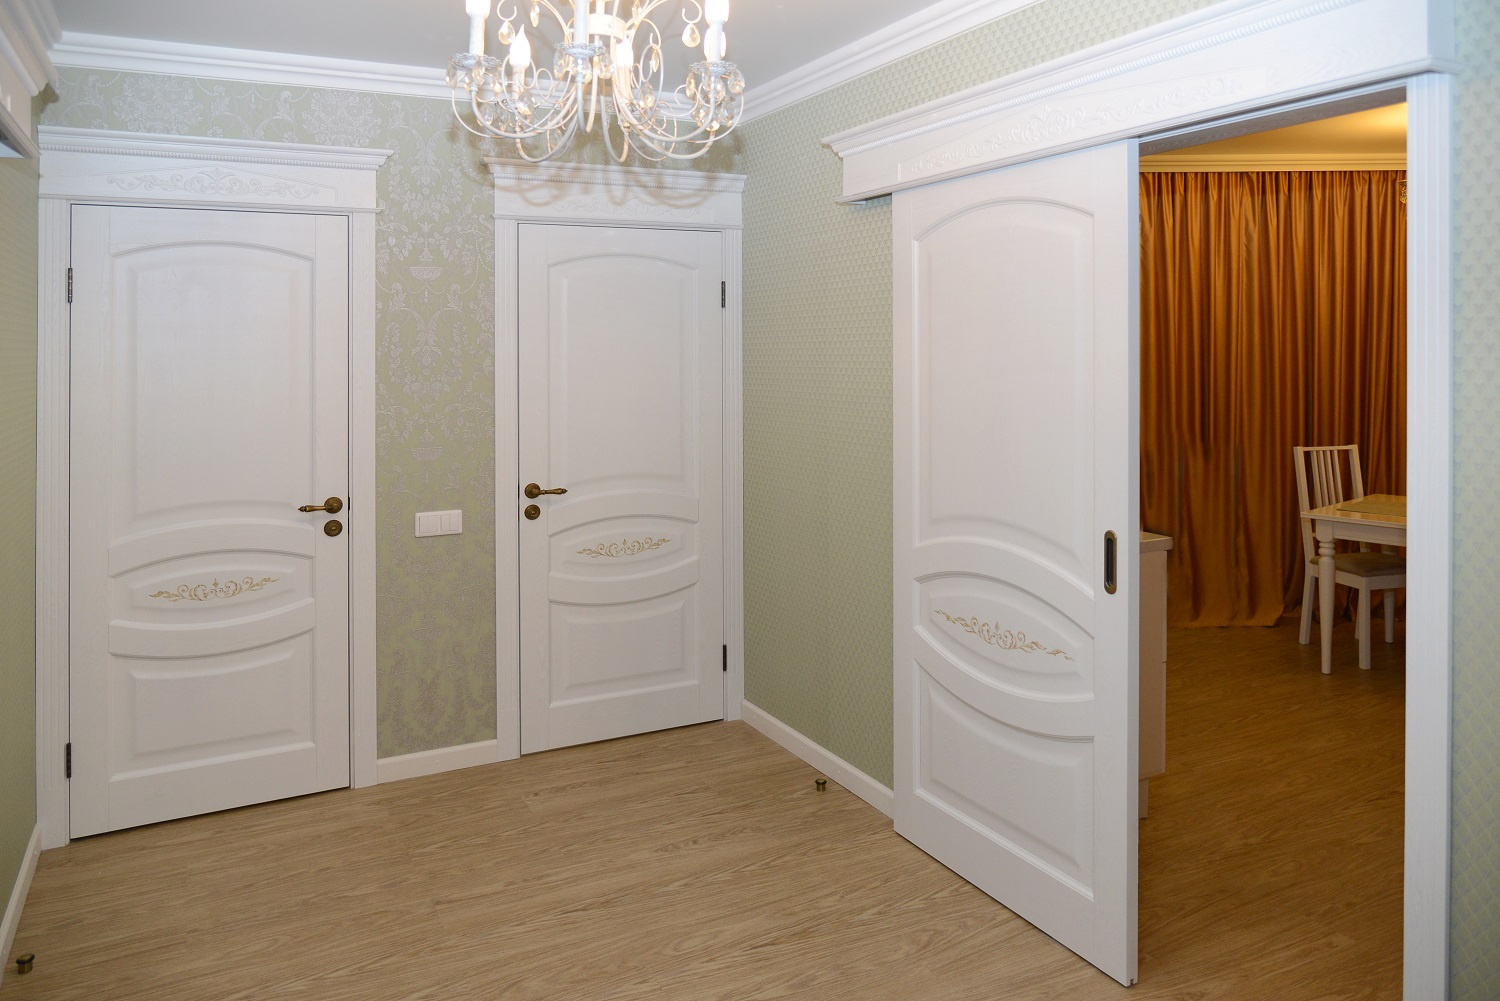 Ремонт межкомнатных дверей квартире. Двери в классическом стиле. Светлые двери в интерьере. Белые межкомнатные двери в интерьере. Двери межкомнатные светлые.